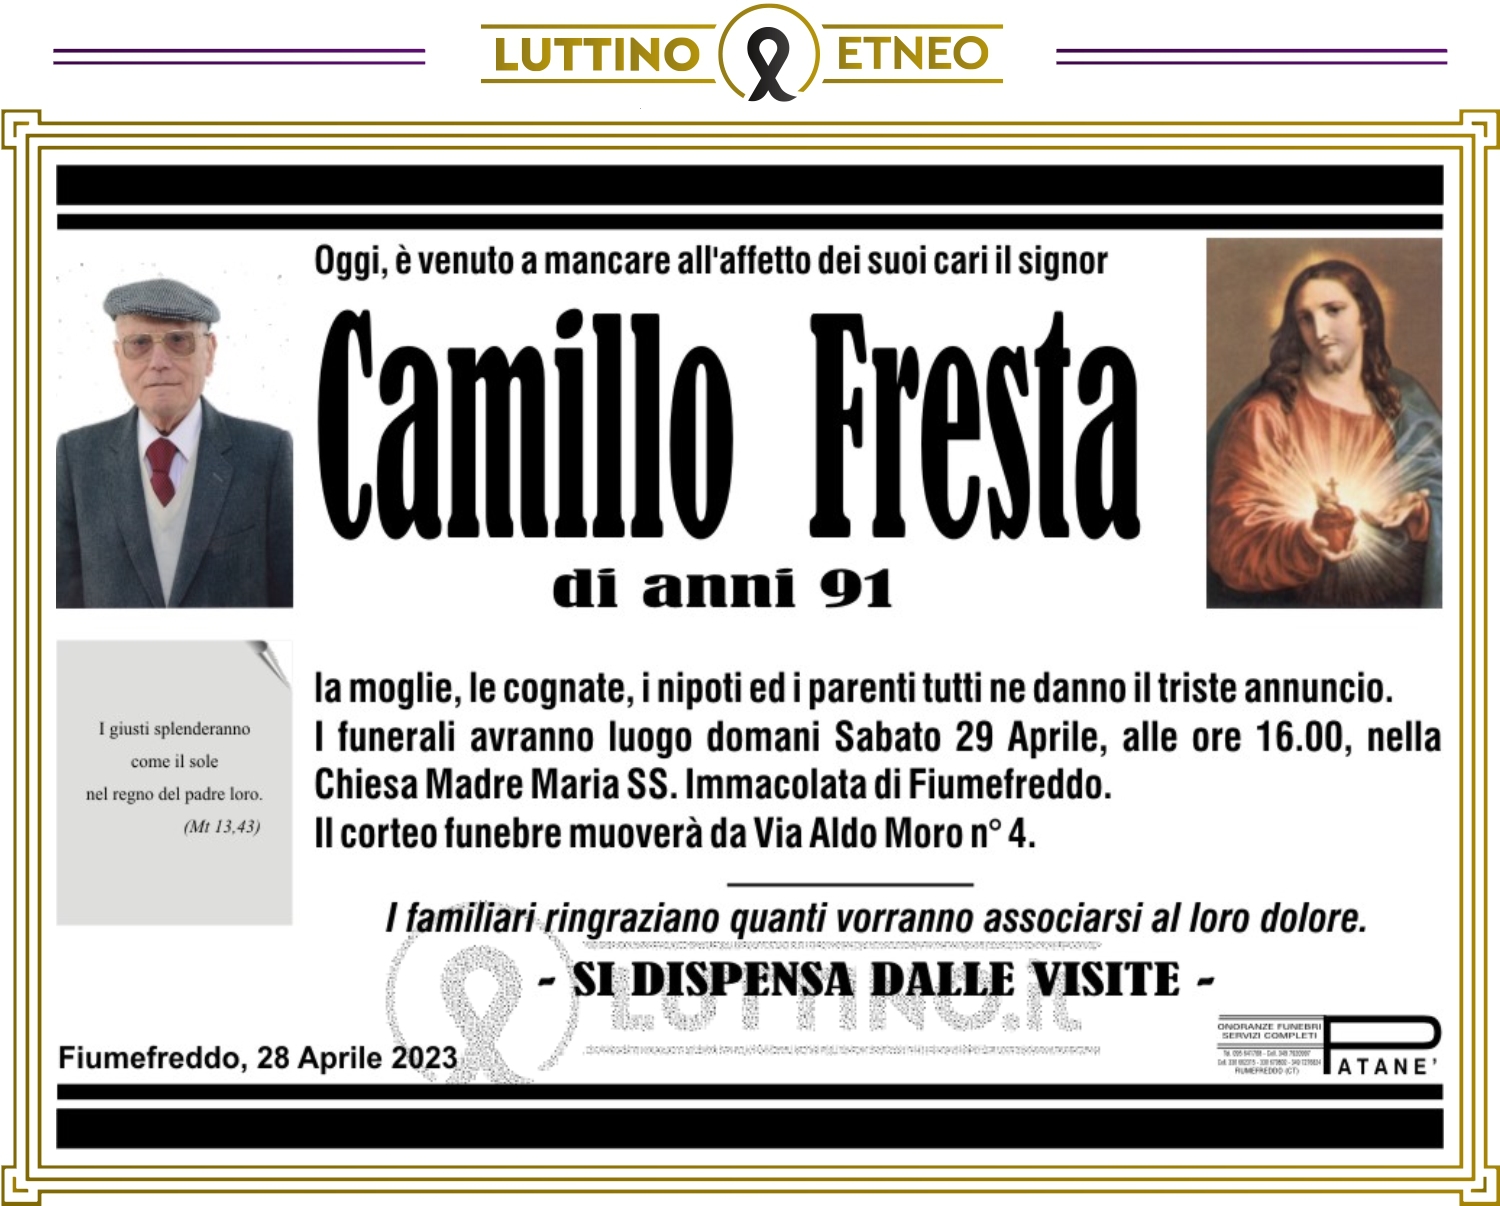 Camillo Fresta